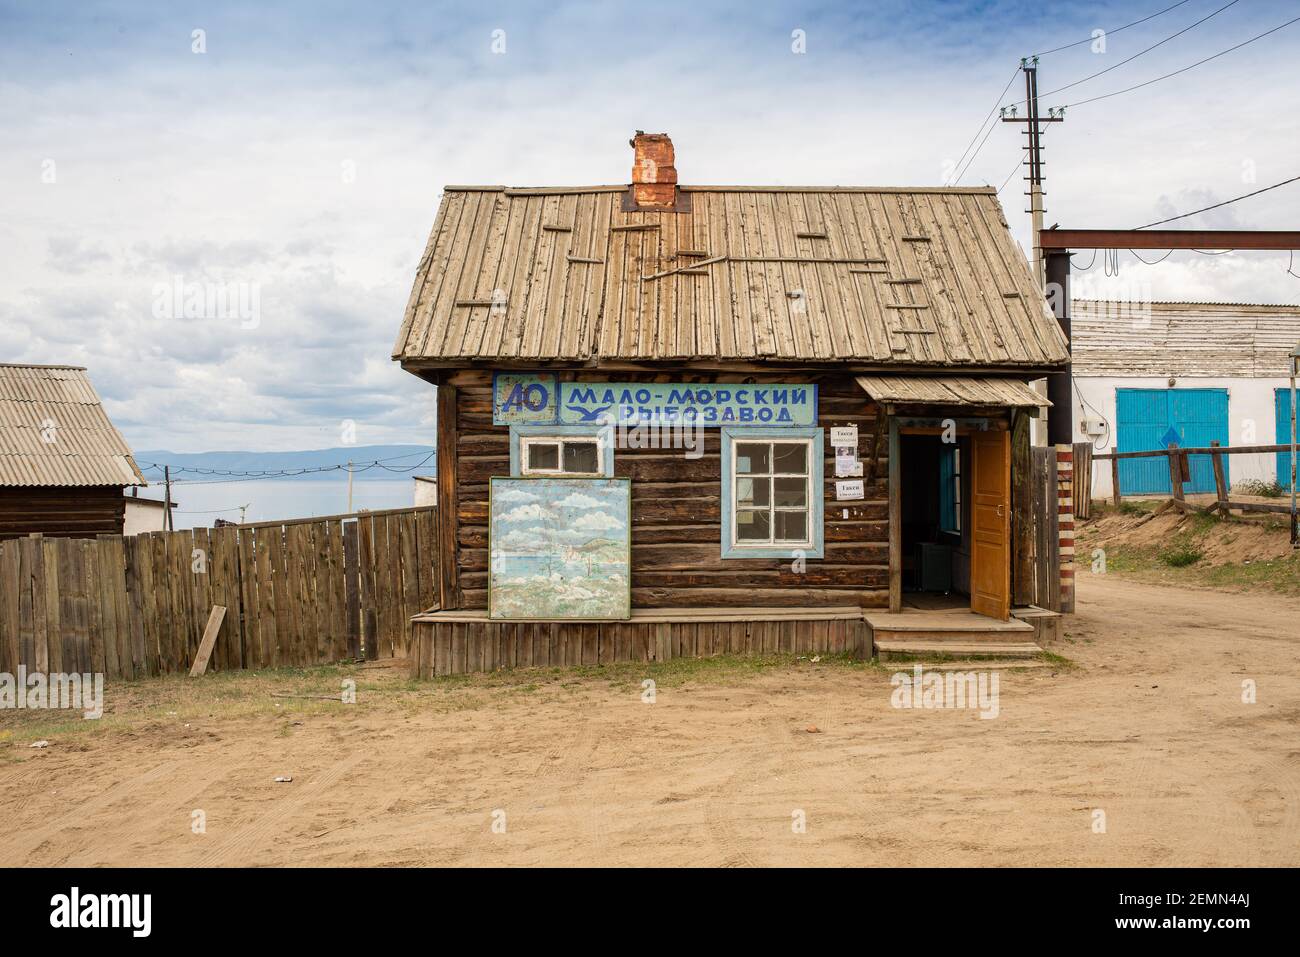 Retro Vintage kleines Holzhaus. Die Inschrift auf dem Gebäude befindet sich in der russischen MALO-MORSKIY FISCHFABRIK. Khuzhir ist das Hauptdorf auf der Insel Olchon Stockfoto